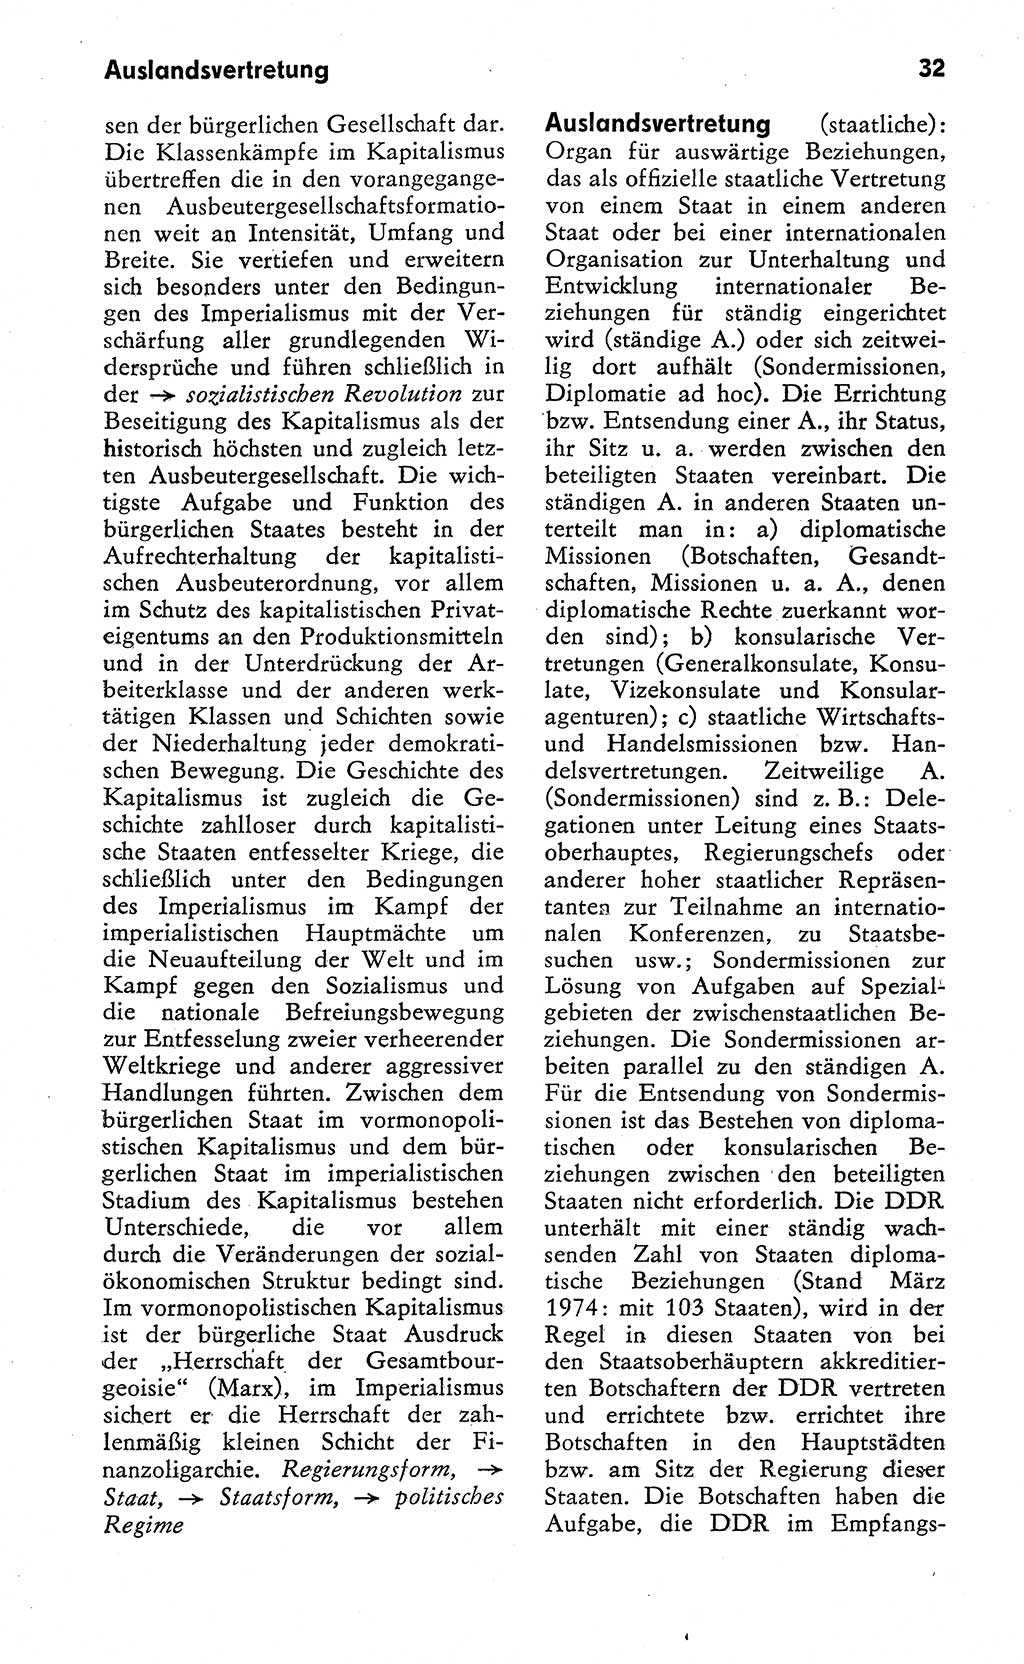 Wörterbuch zum sozialistischen Staat [Deutsche Demokratische Republik (DDR)] 1974, Seite 32 (Wb. soz. St. DDR 1974, S. 32)